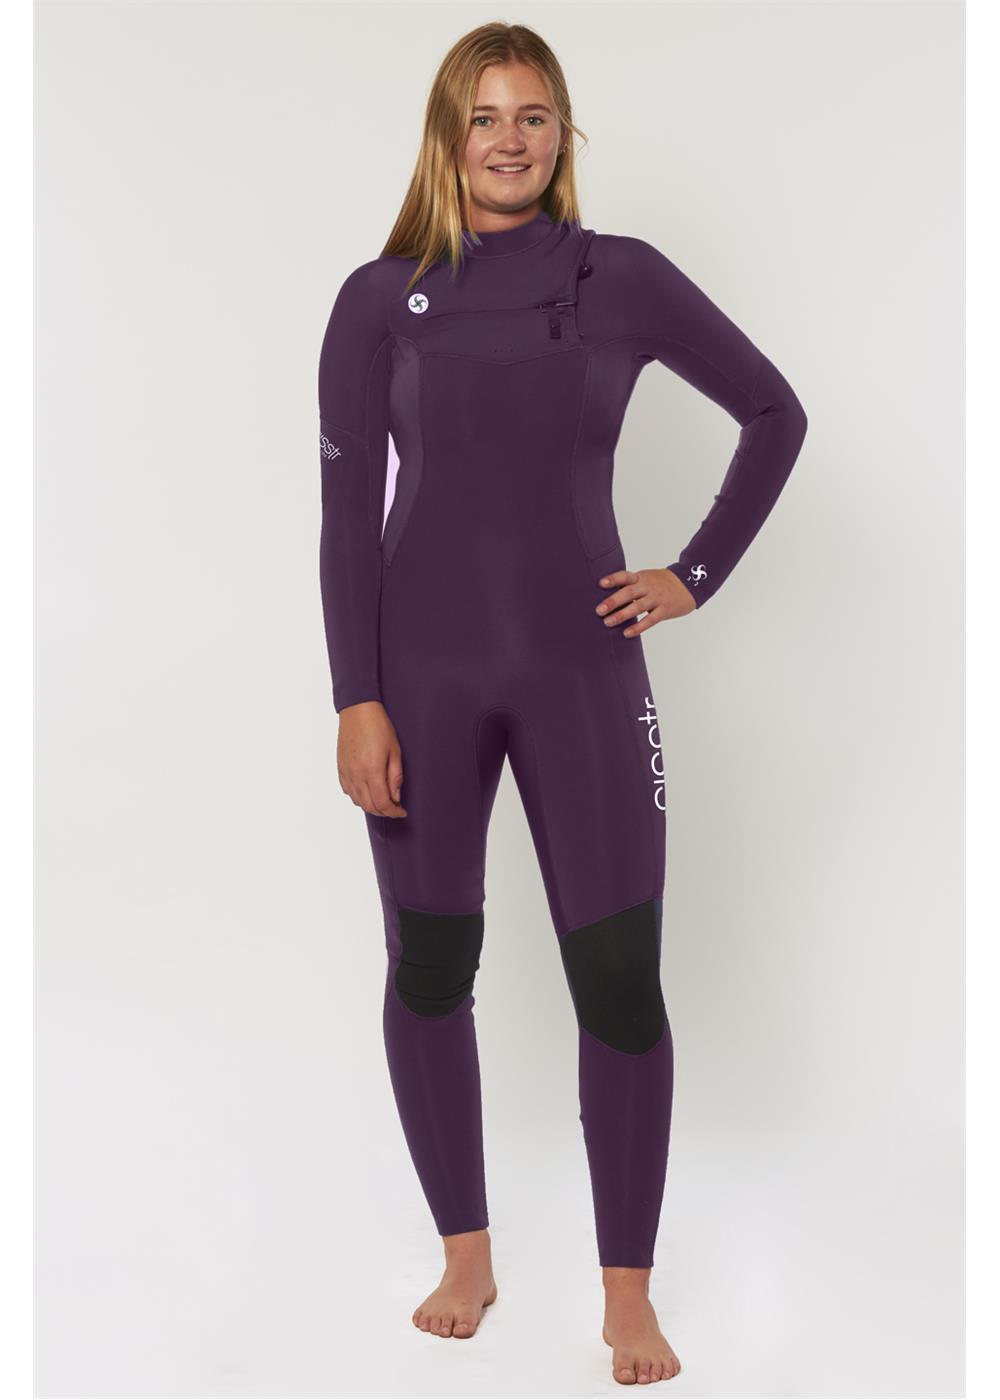 Sisstrevolution 7 Seas 5/4 chest zip full wetsuit -violet UK10 / violet